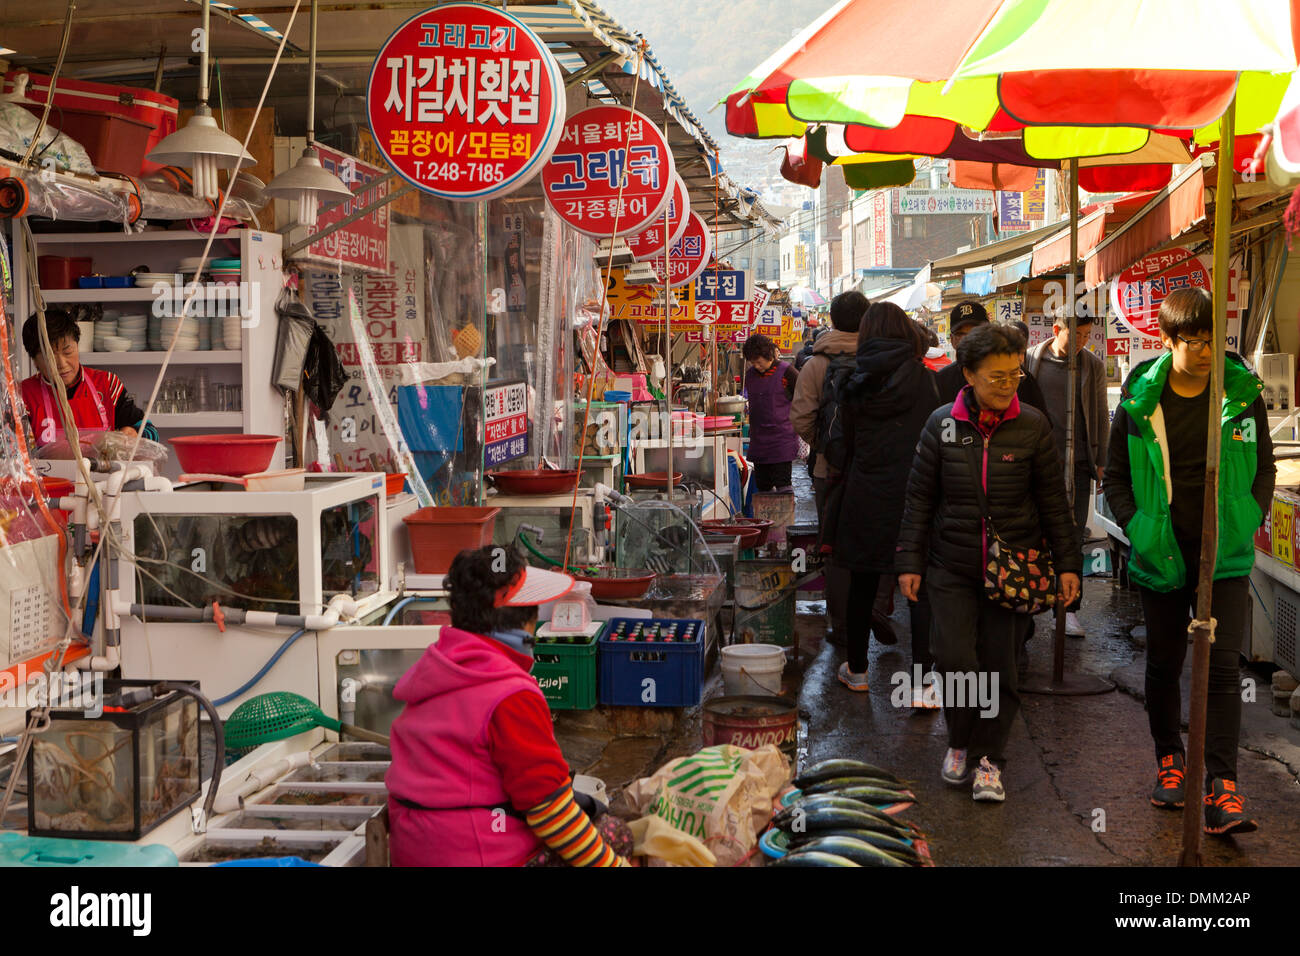 Vendors and shoppers at Jagalchi shijang (traditional outdoor market) - Busan, South Korea Stock Photo